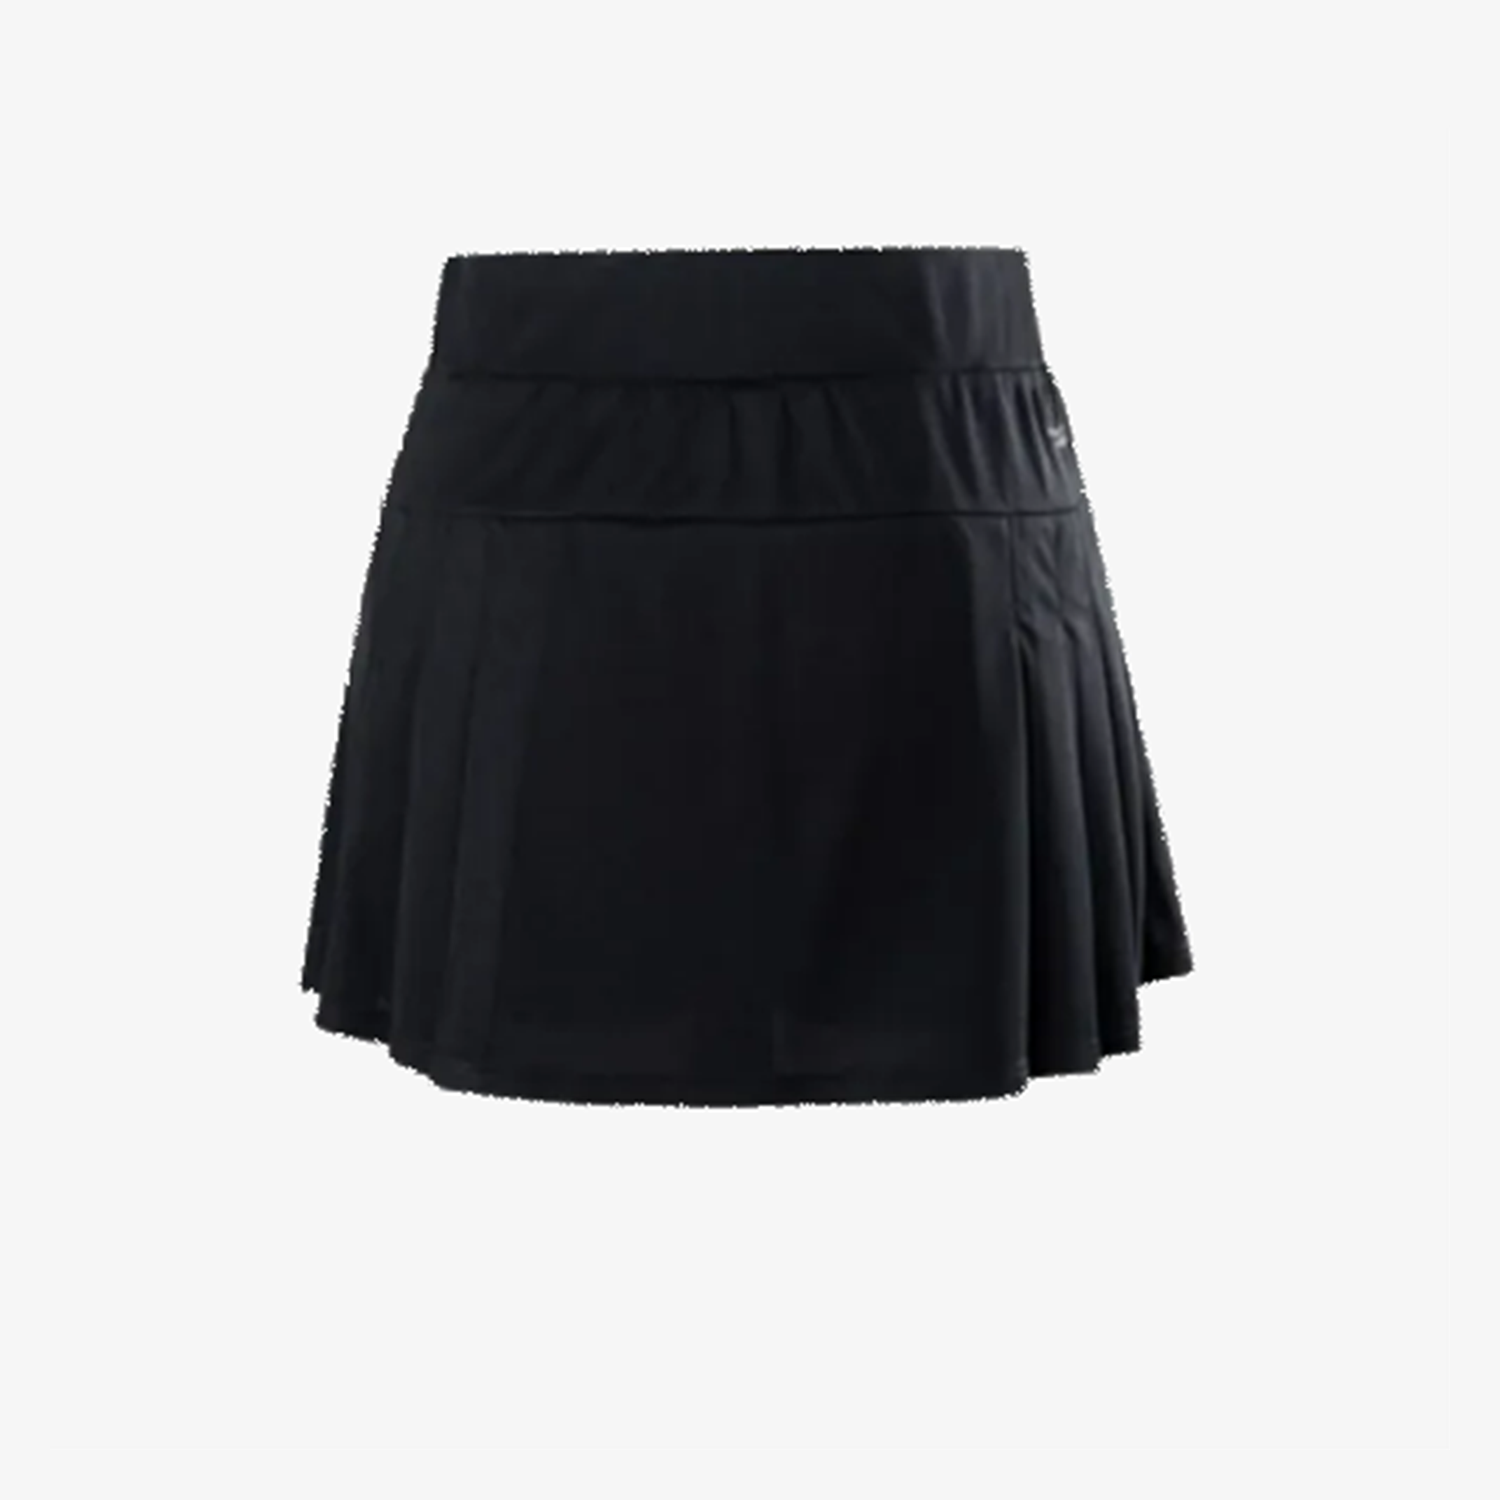 Victor Junior Skirt K-32302C (Black)